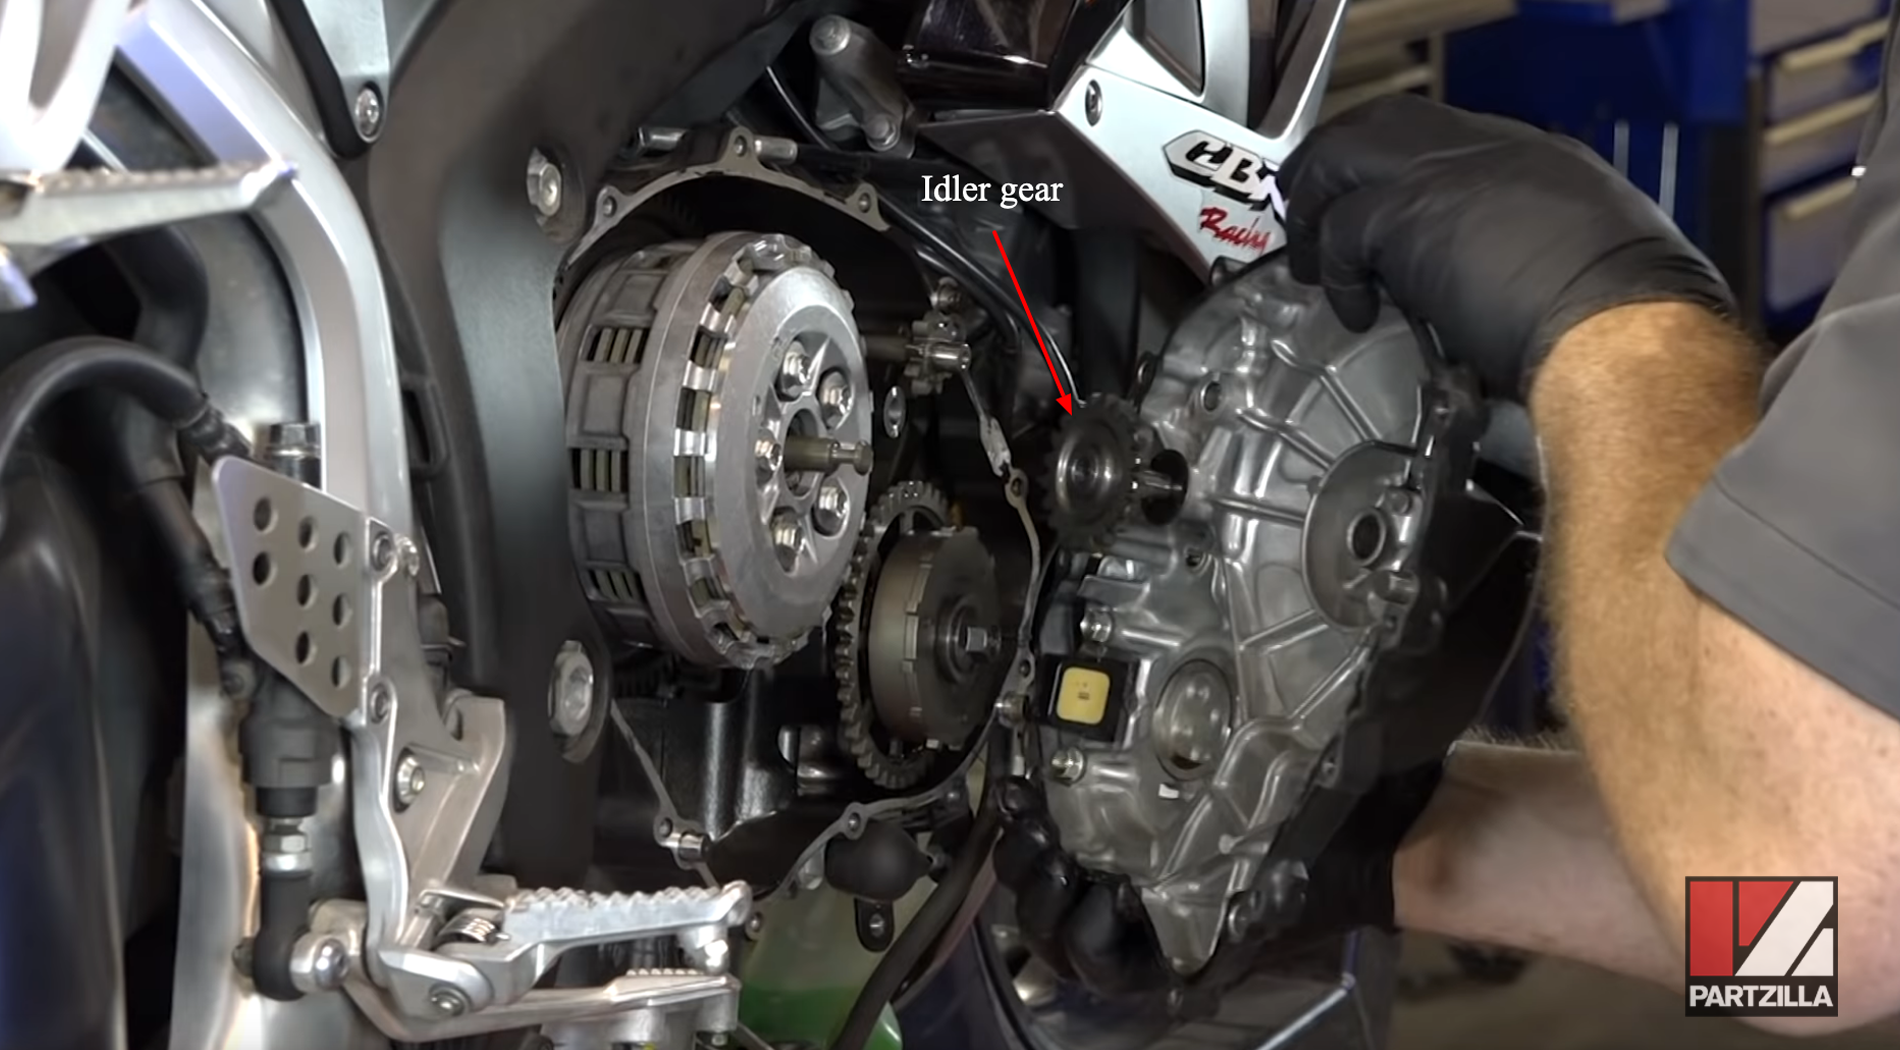 Honda CBR 600 clutch rebuild idler gear